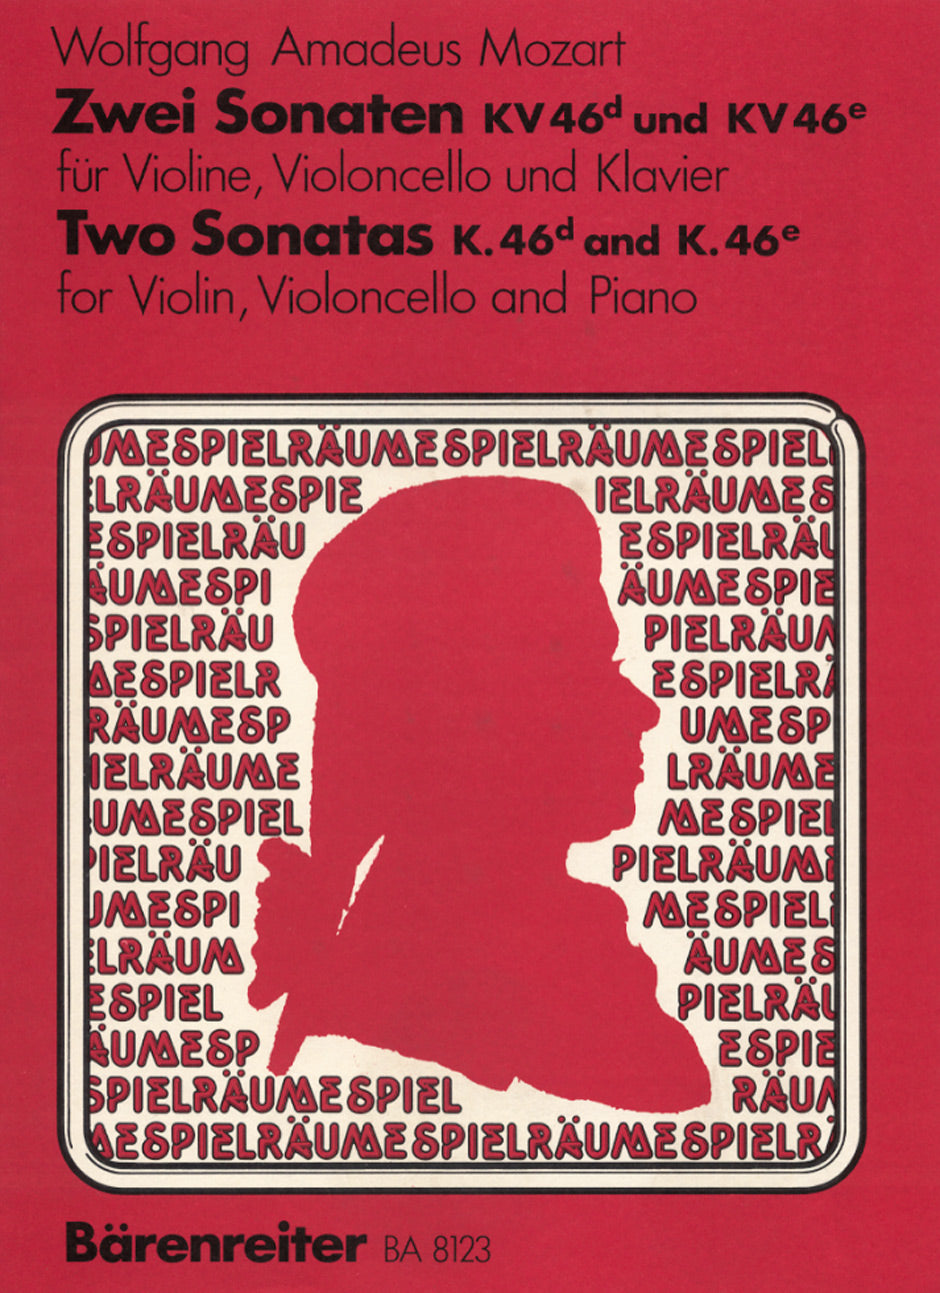 Mozart Zwei Sonaten KV 46d,e -Bearbeitung der Duos für Violine und Violoncello. Klavierstimme vom Herausgeber-